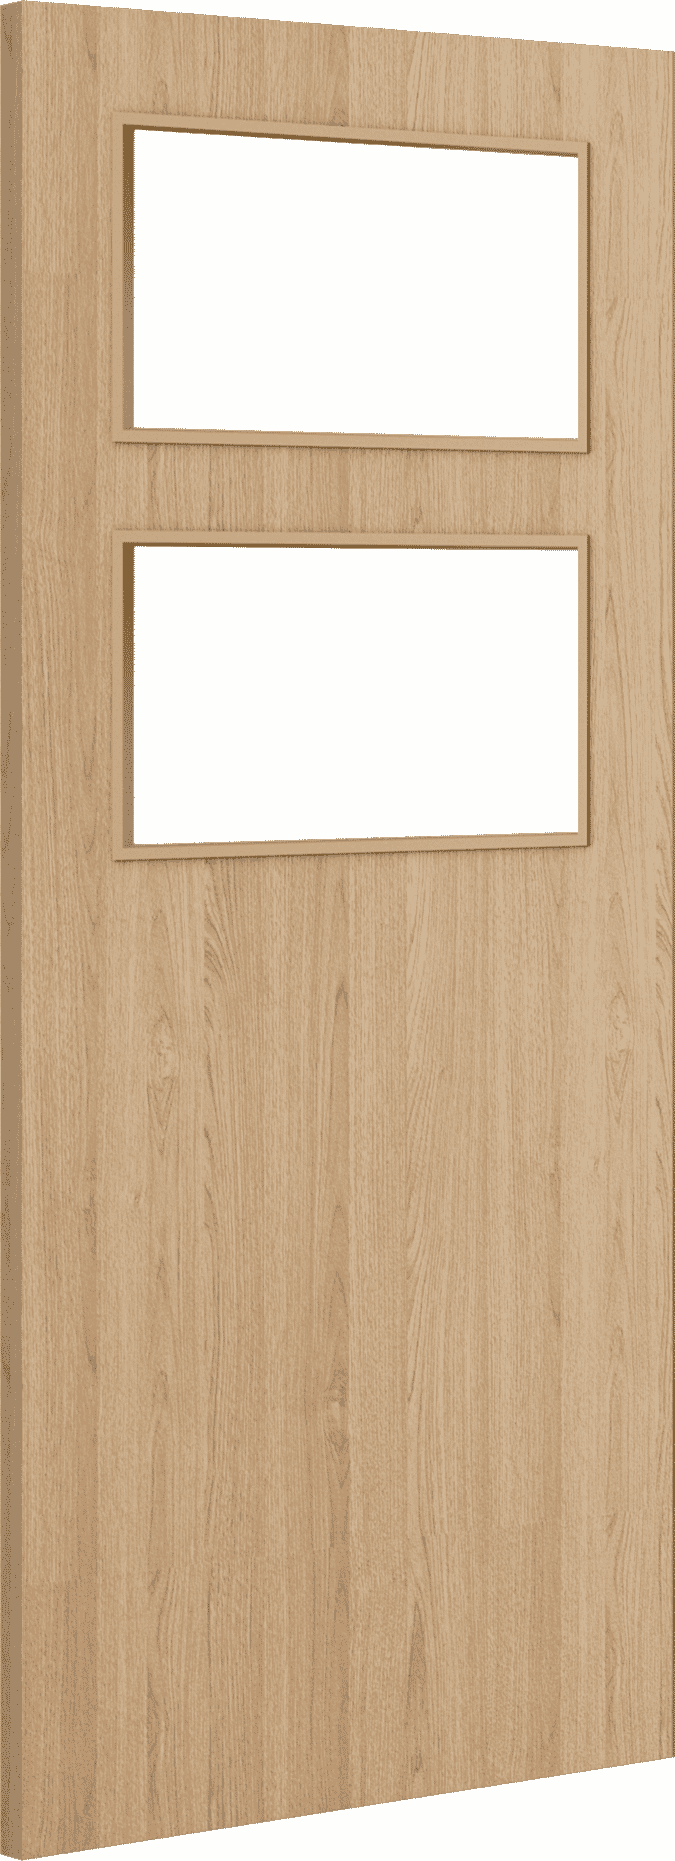 1981mm x 610mm x 44mm (24") Architectural Oak 02 Clear Glazed - Prefinished FD30 Fire Door Blank